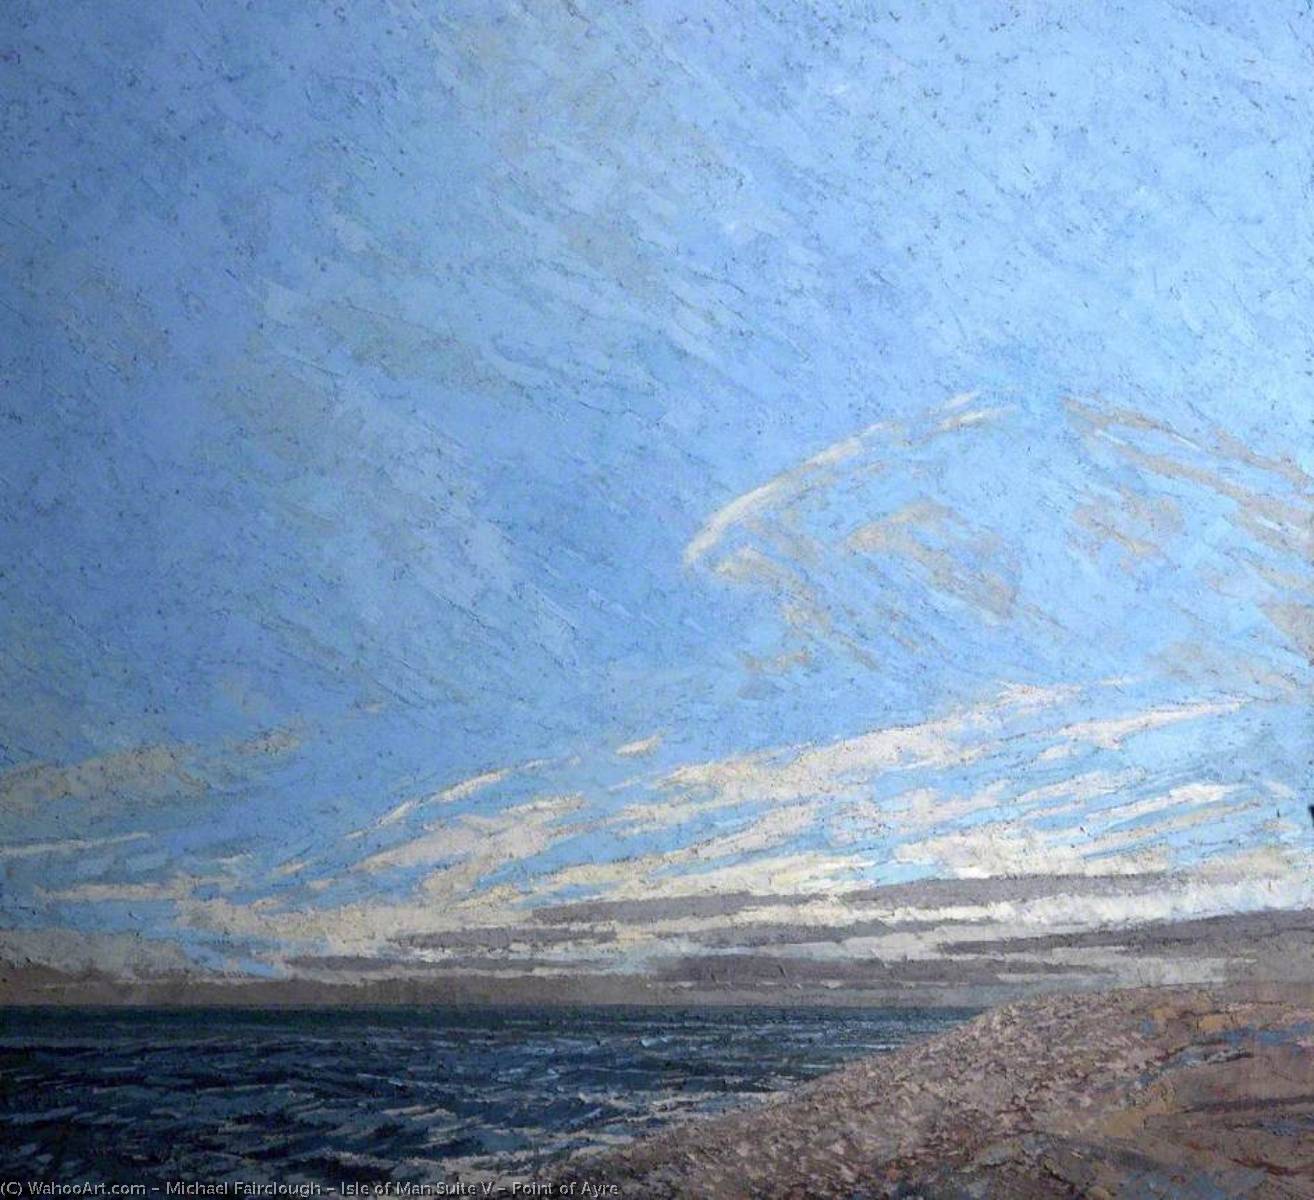 Wikioo.org - Bách khoa toàn thư về mỹ thuật - Vẽ tranh, Tác phẩm nghệ thuật Michael Fairclough - Isle of Man Suite V – Point of Ayre